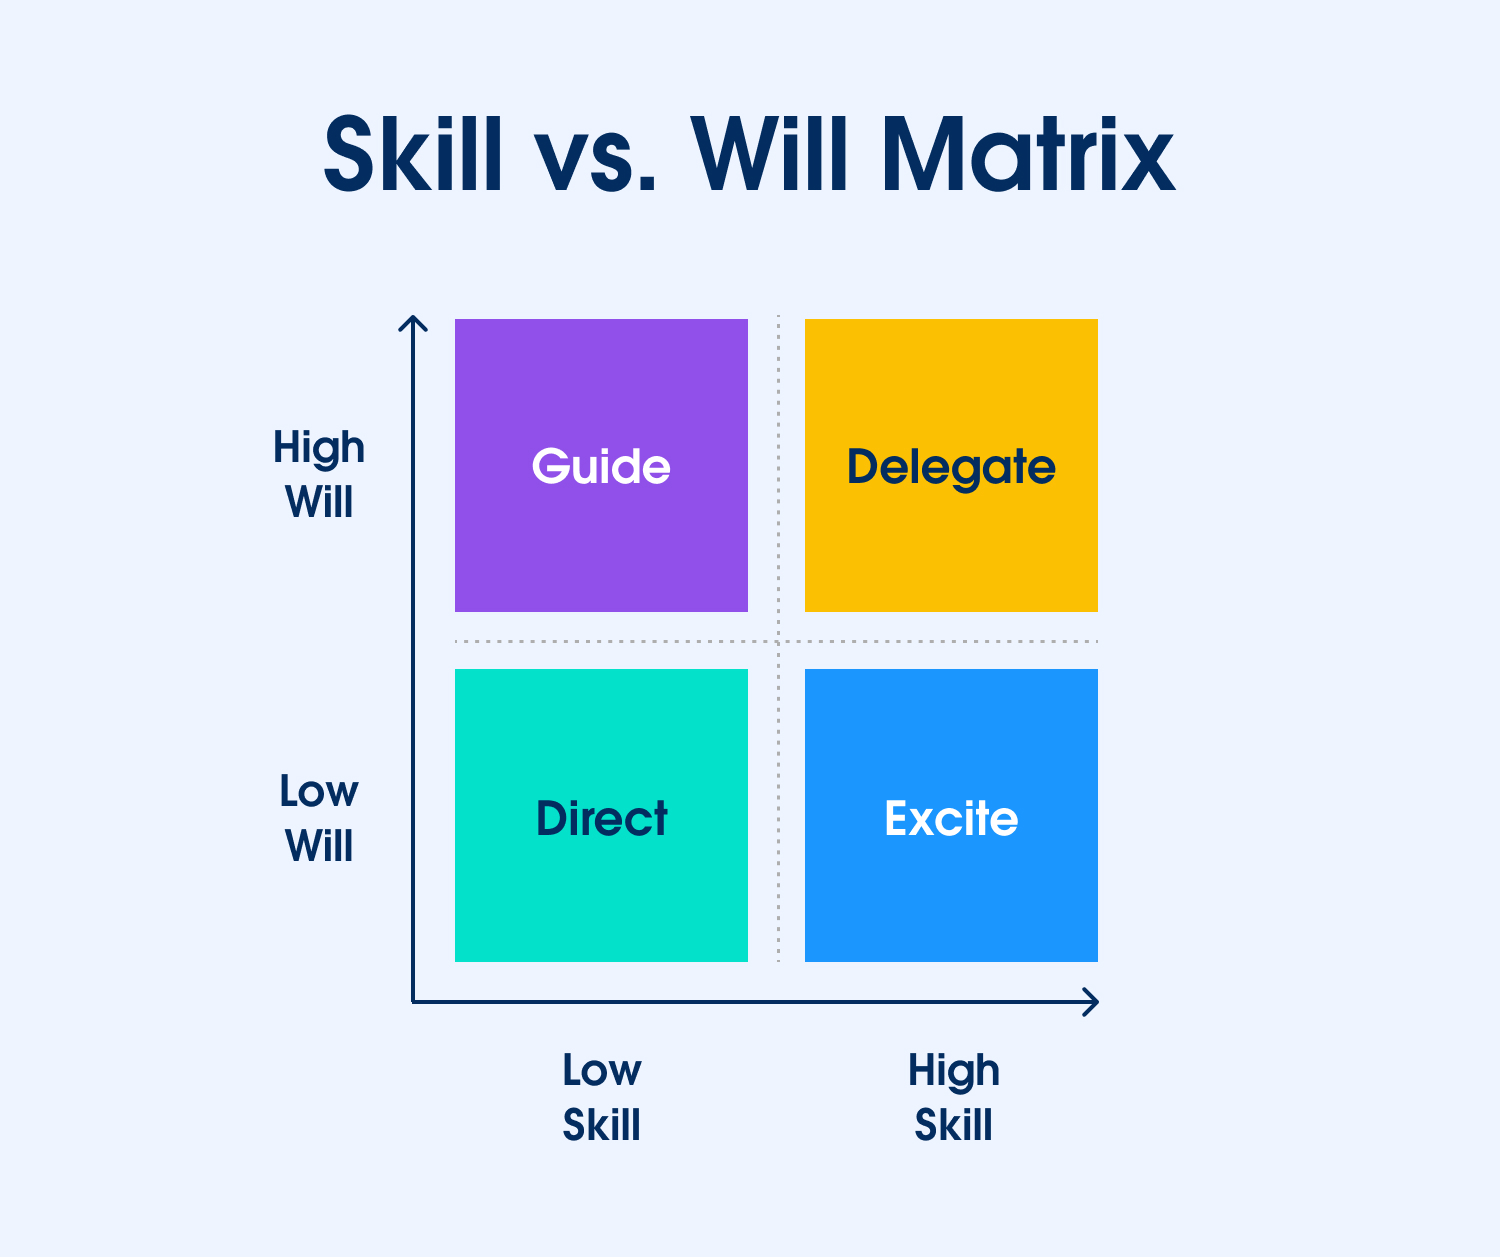 La matriz habilidades vs. voluntad